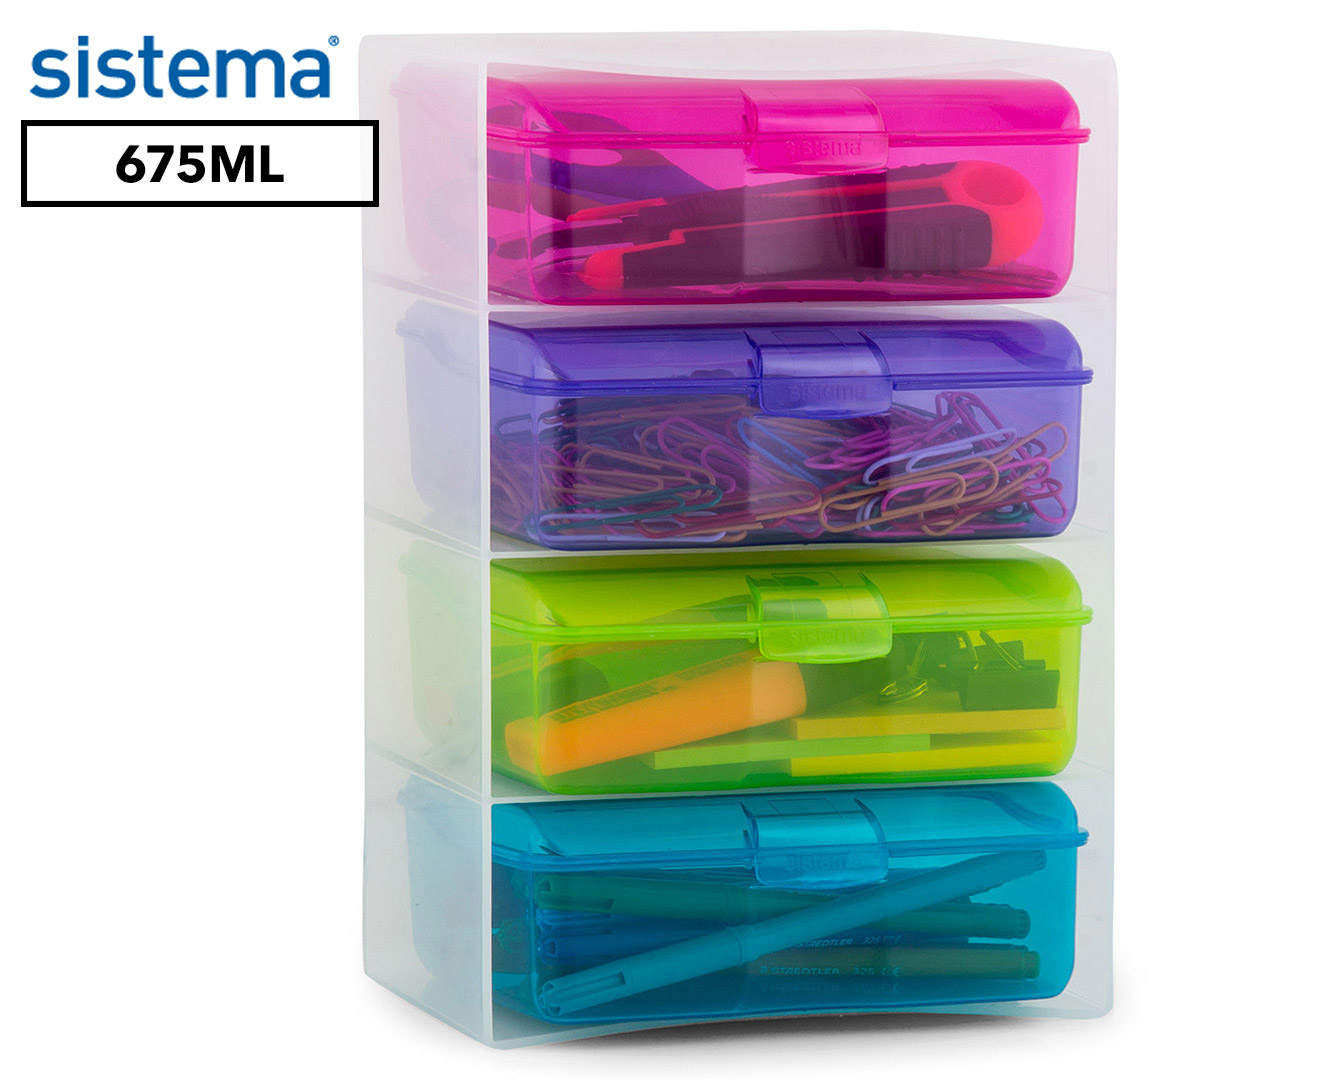 Sistema 675mL Klipo 4-Piece Storage Container Organiser - Multi